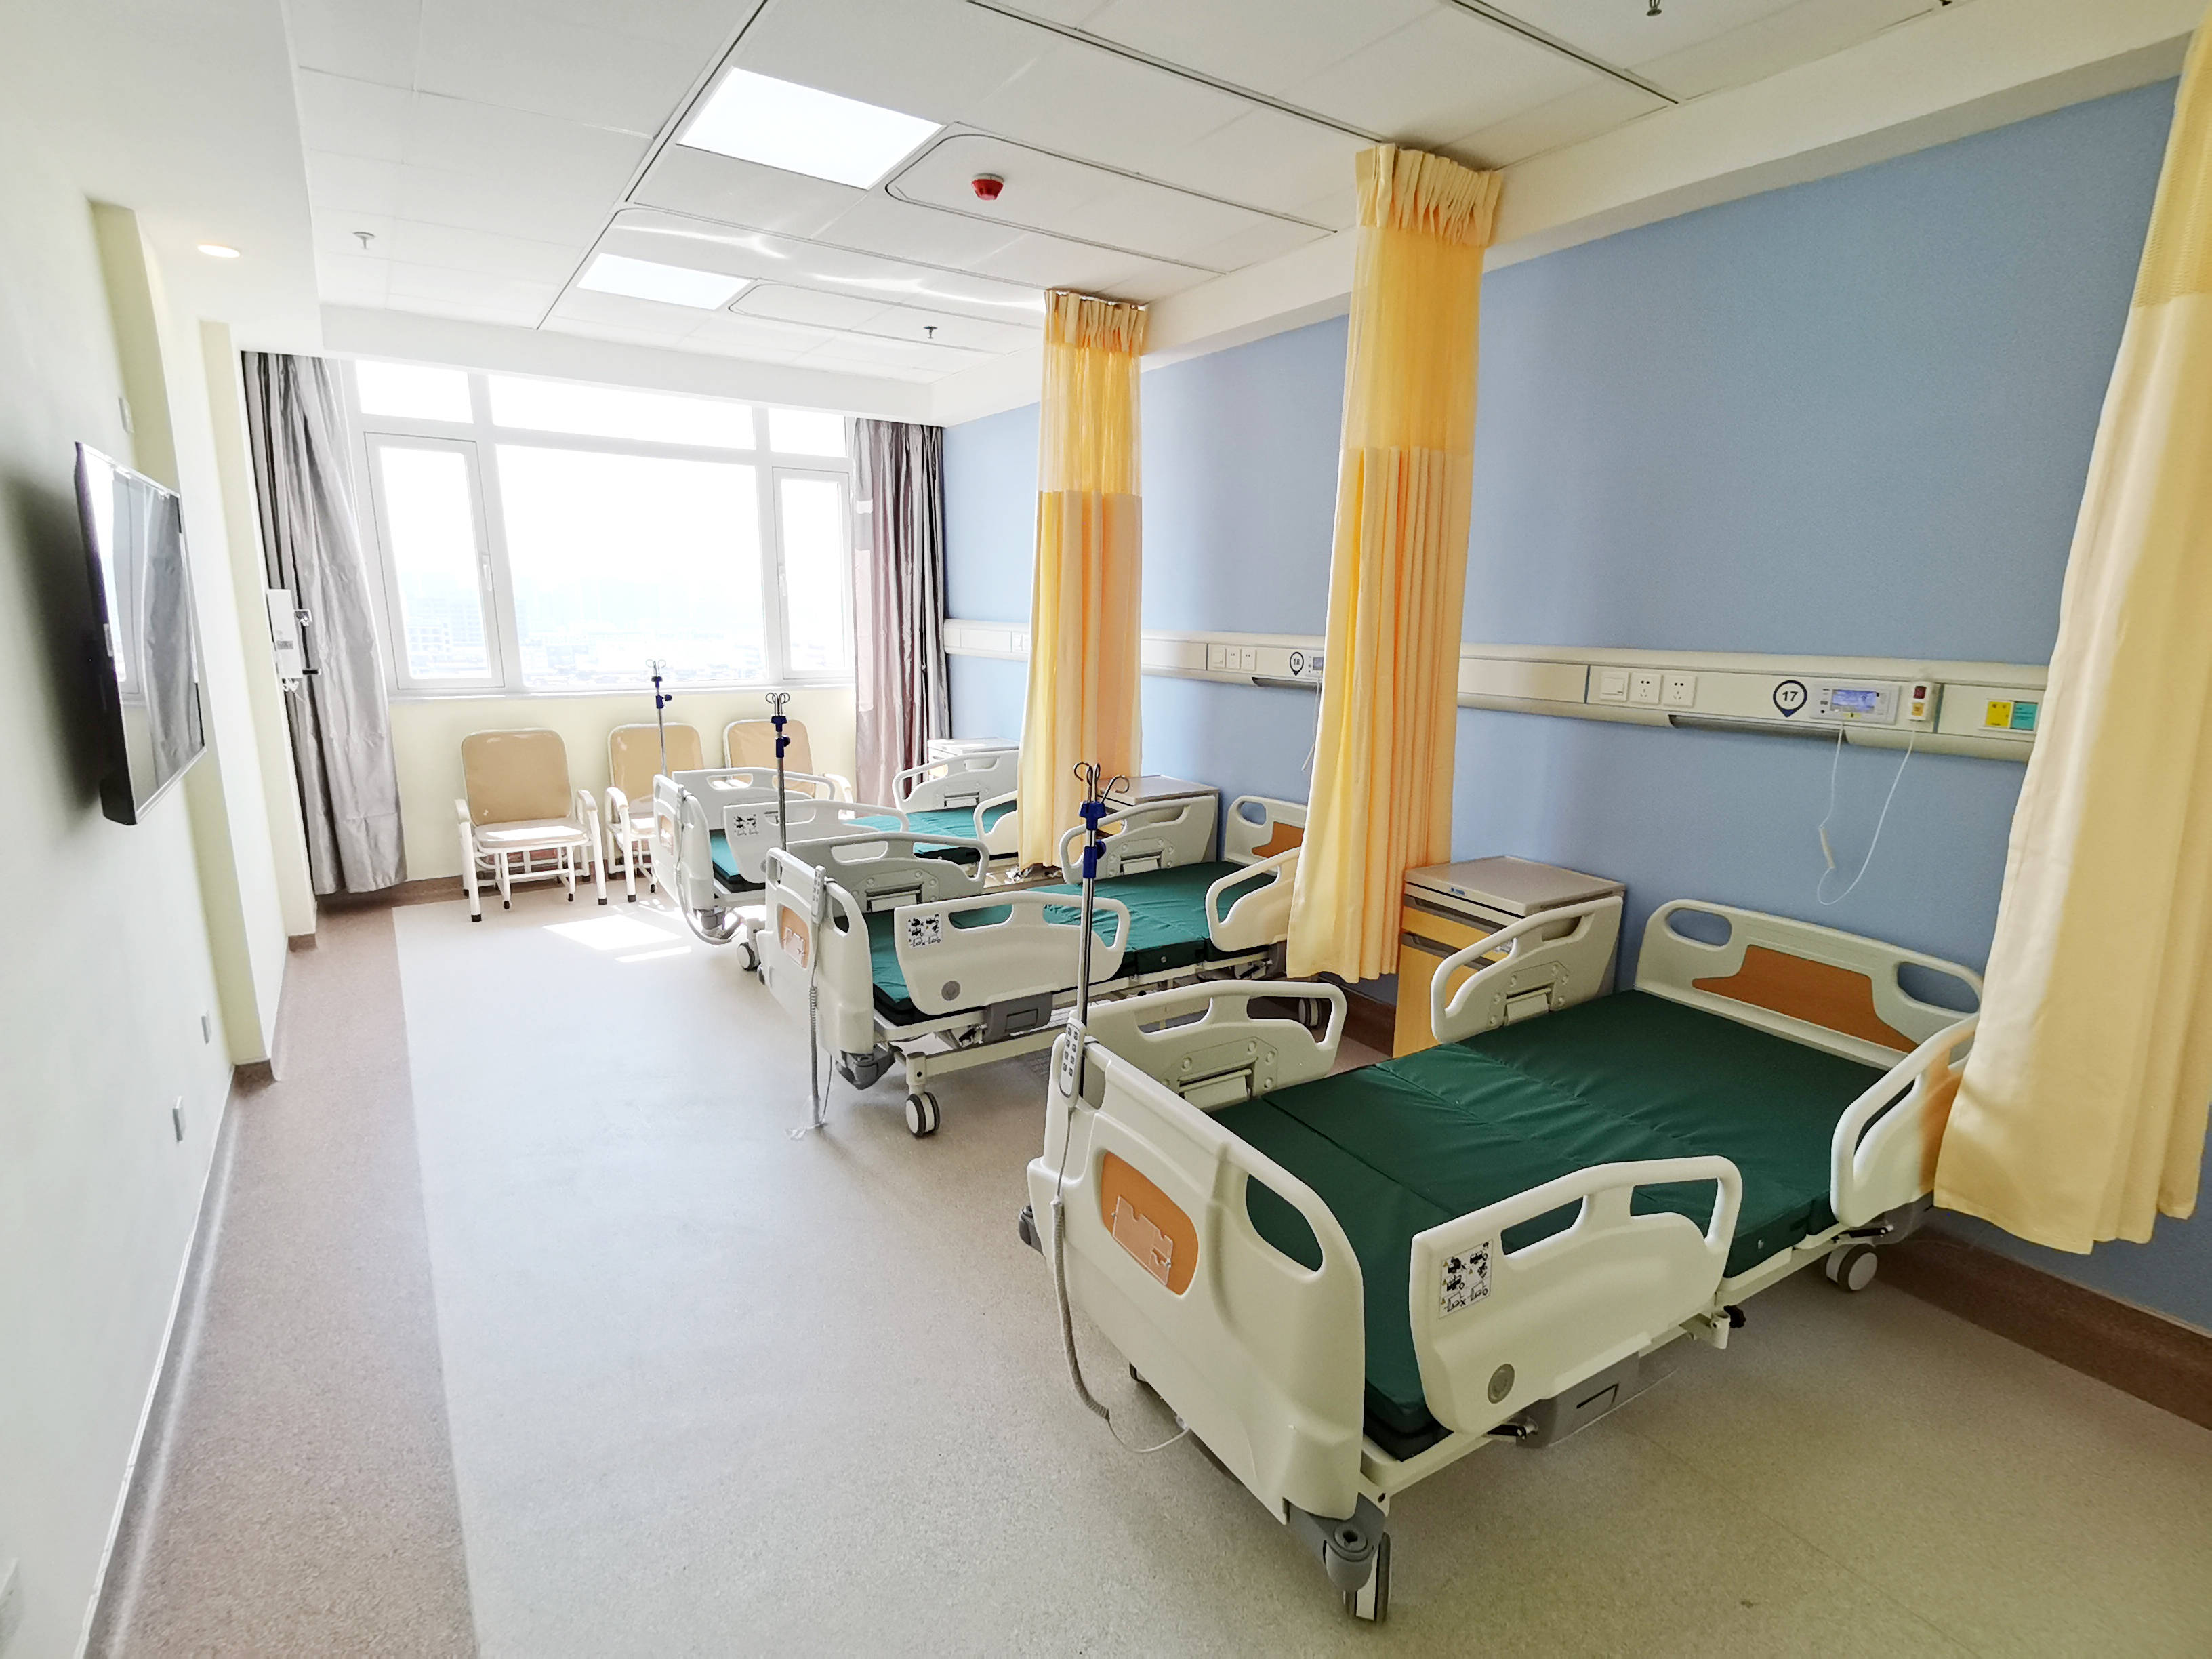 增进民生福祉南昌又一大型综合医院开启一院两区新模式